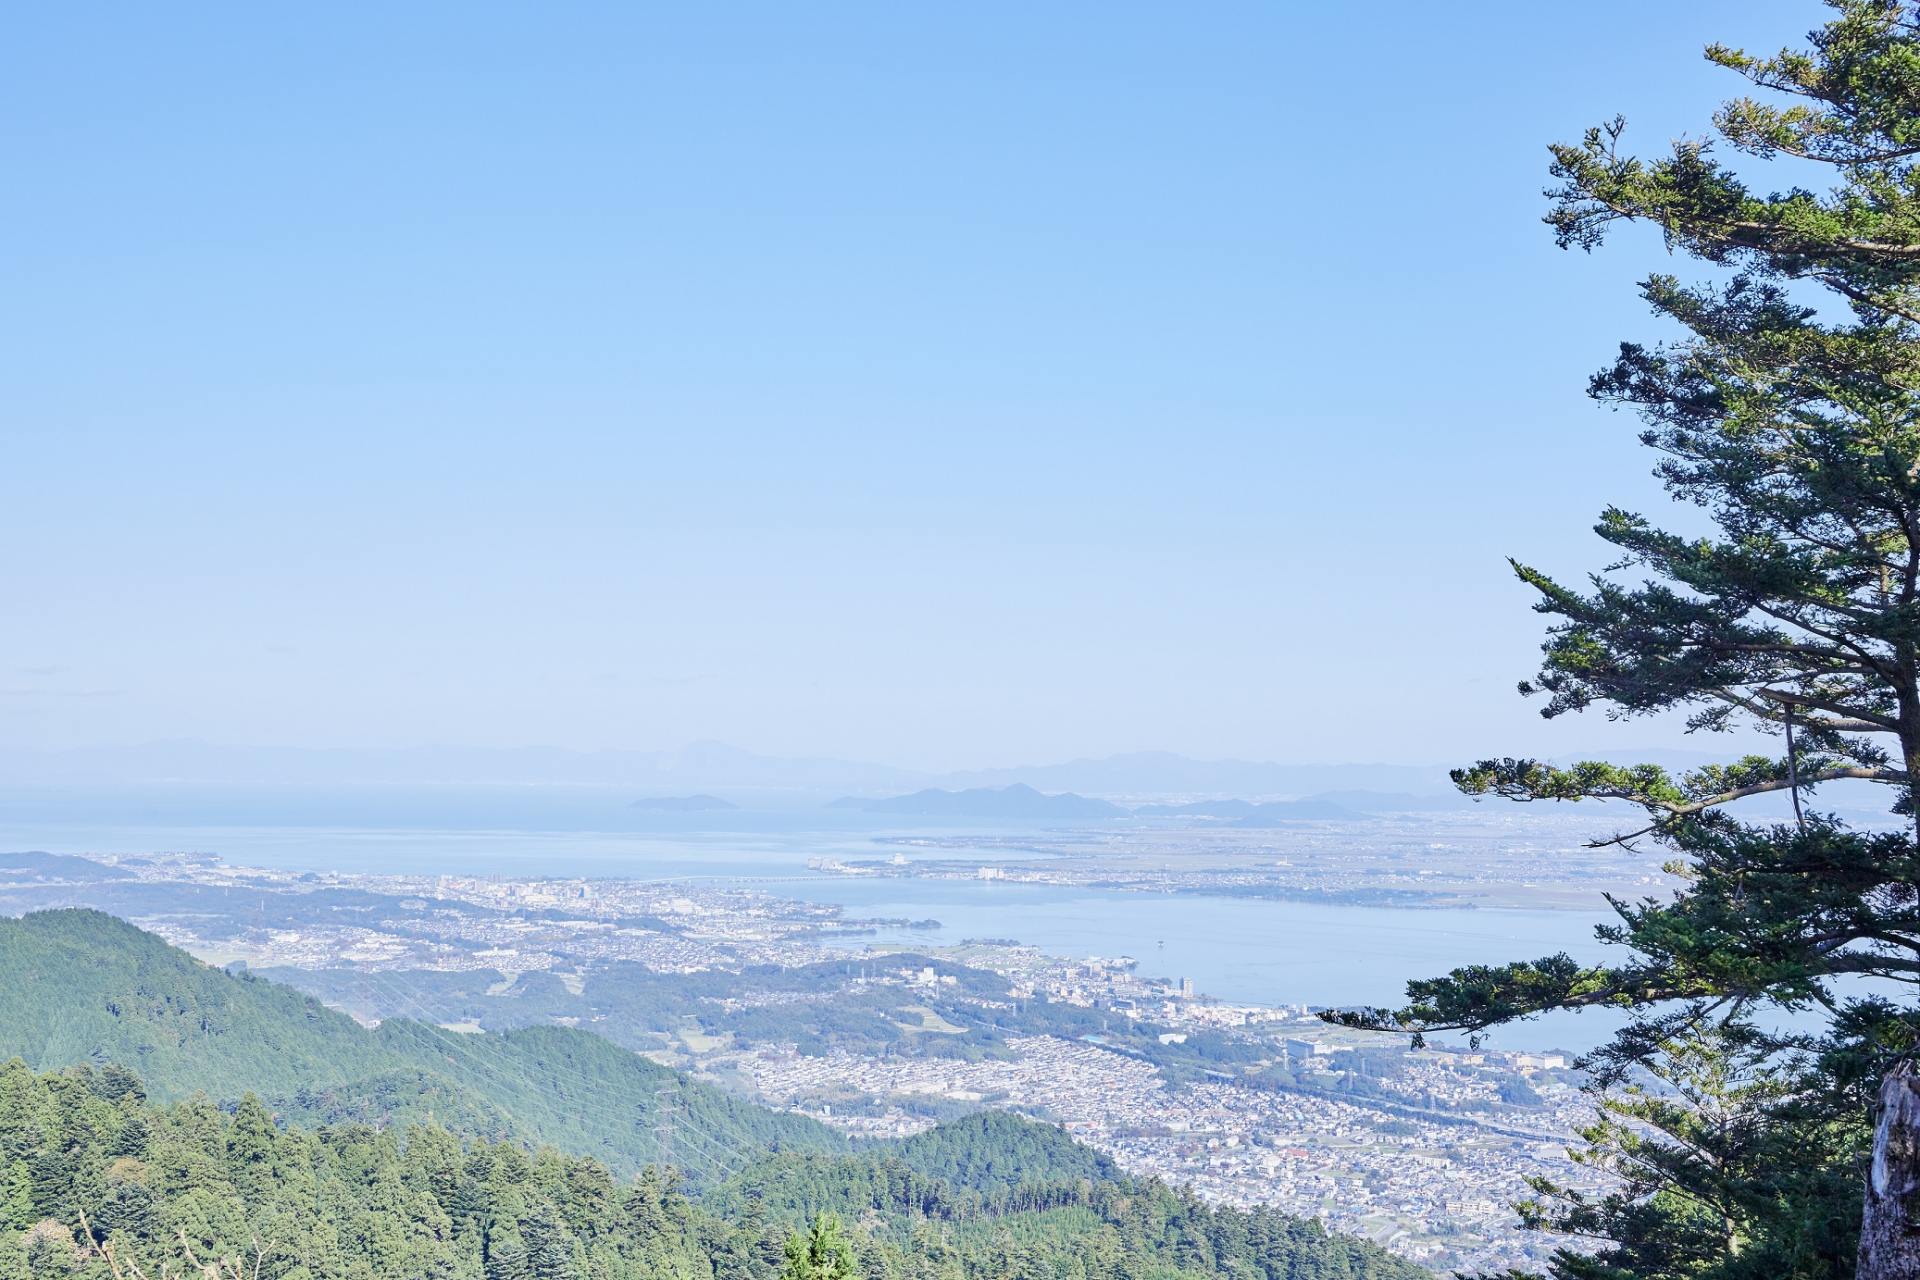 標高700mほどの高さから見下ろす琵琶湖の美しさは圧巻。